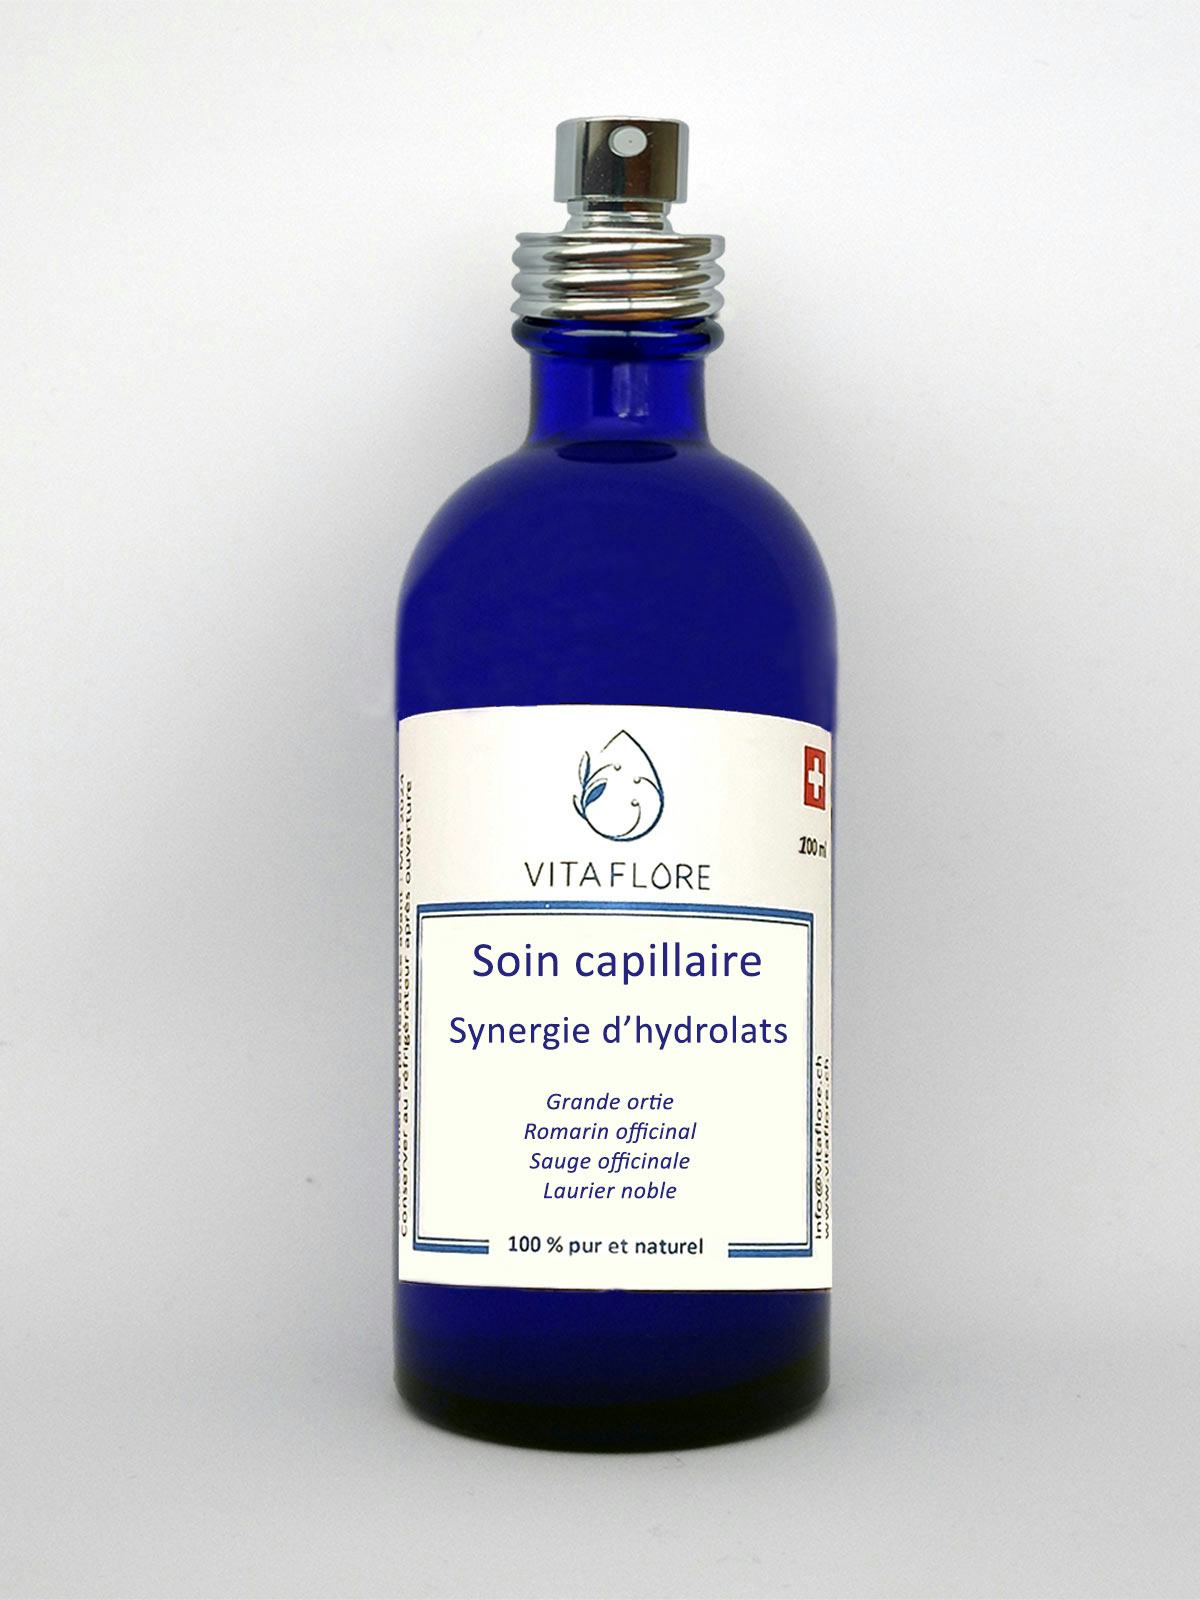 Synergie d’hydrolats – Soin capillaire, produit artisanal en vente directe en Suisse